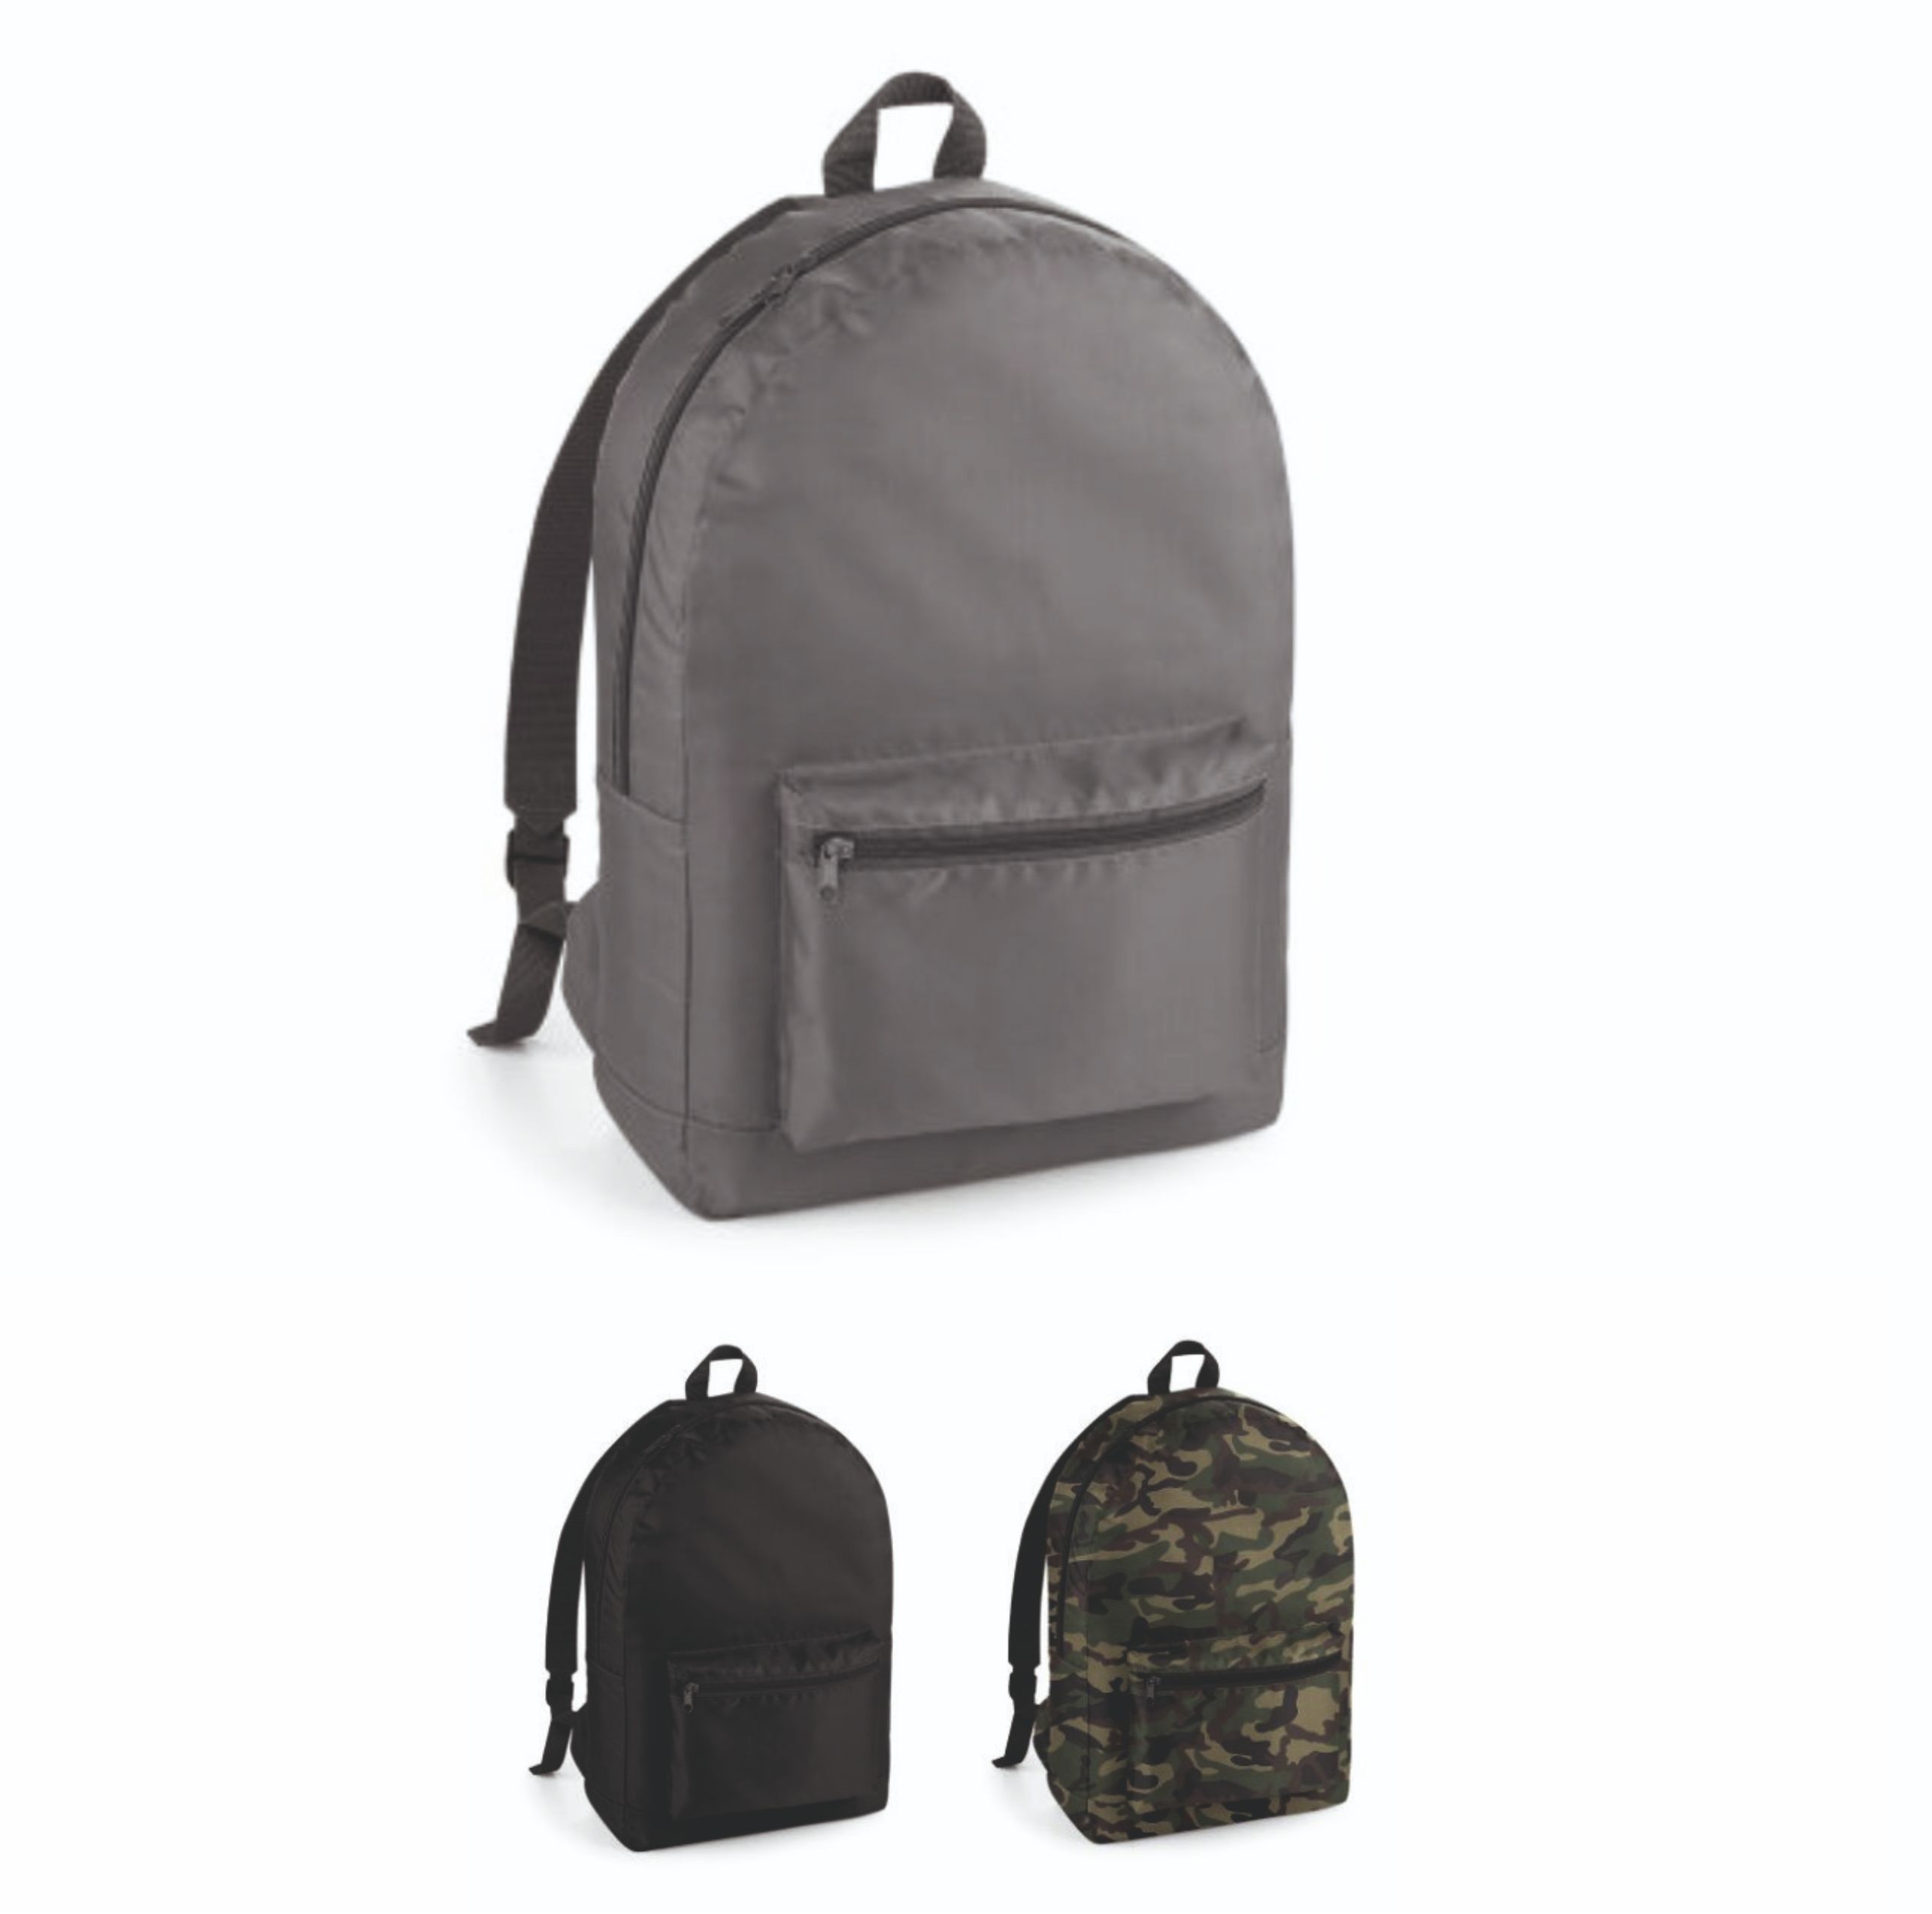 BG151 Bagbase Packaway Backpack